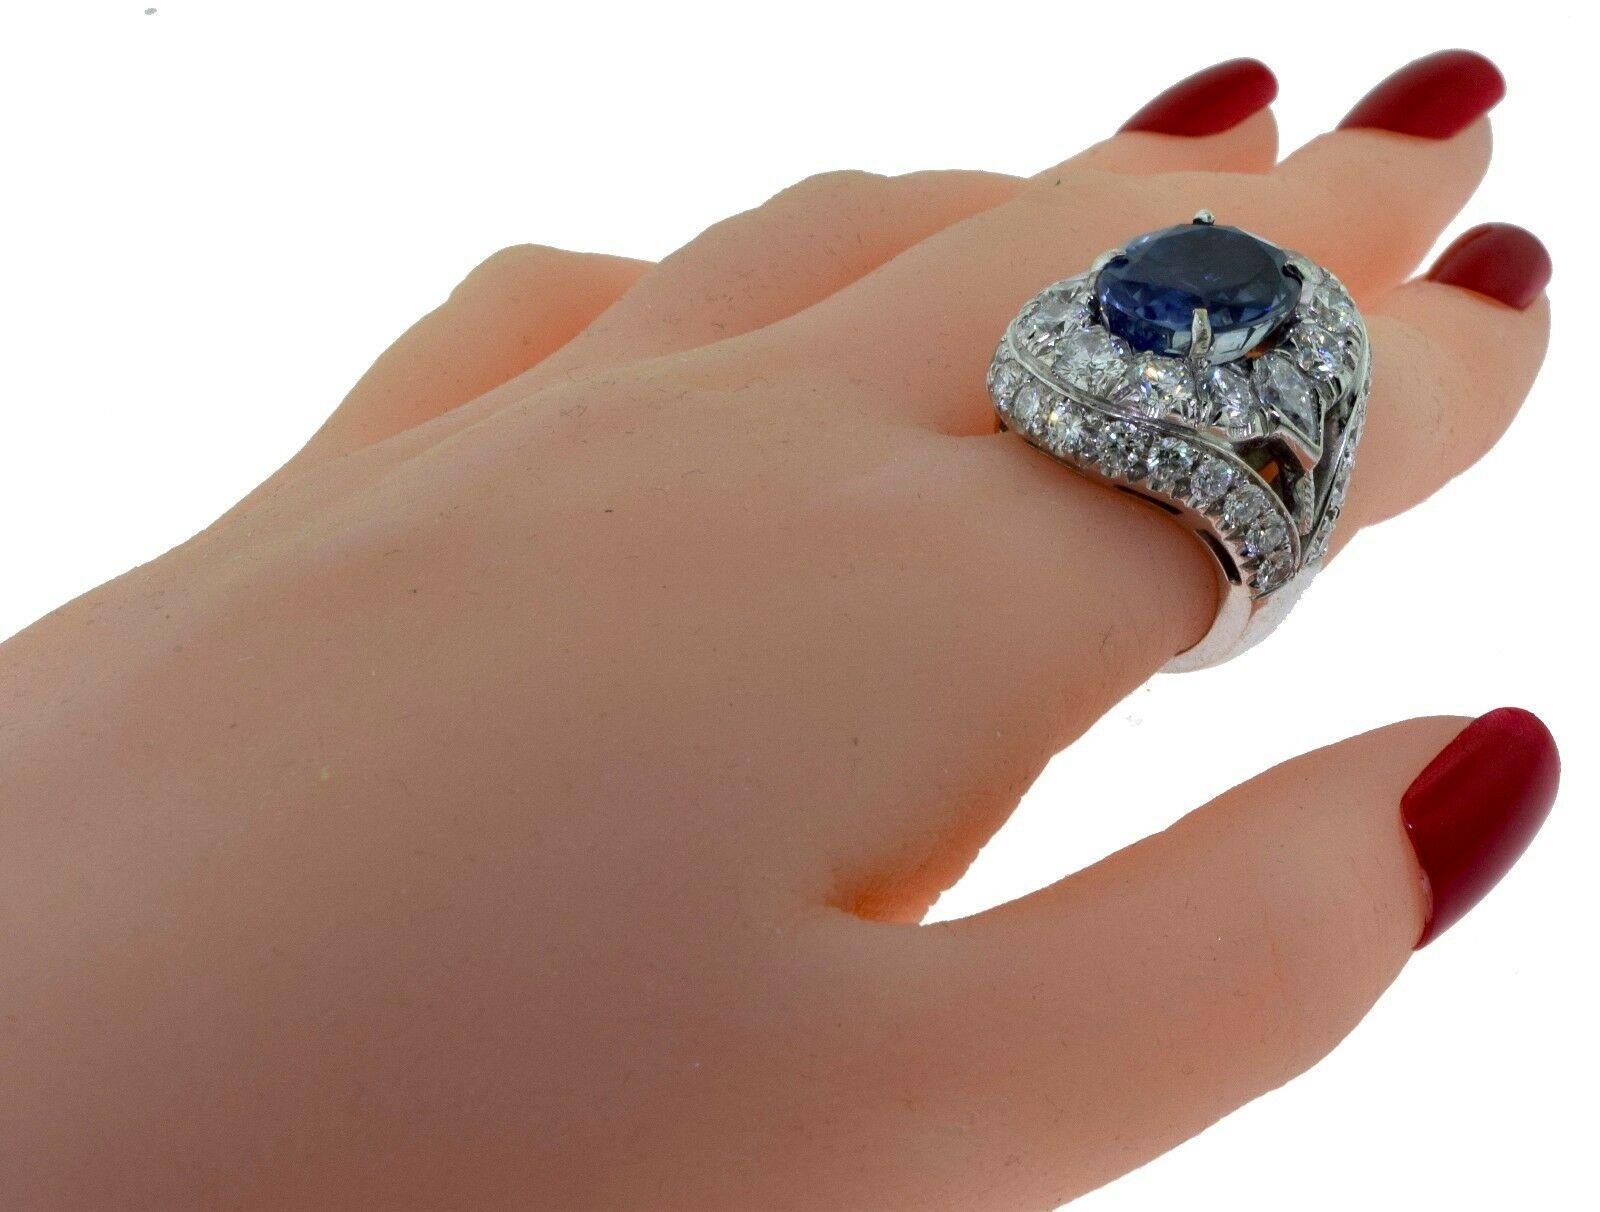 Brillanz Juwelen, Miami
Haben Sie Fragen? Rufen Sie uns jederzeit an!
786,482,8100

Metall: Weißgold

Metallreinheit: 18k

Steine: Diamanten

              Ceylon Saphir

Gesamtgewicht des Artikels (g): 25

Diamant-Farbe: G

Diamant Reinheit: